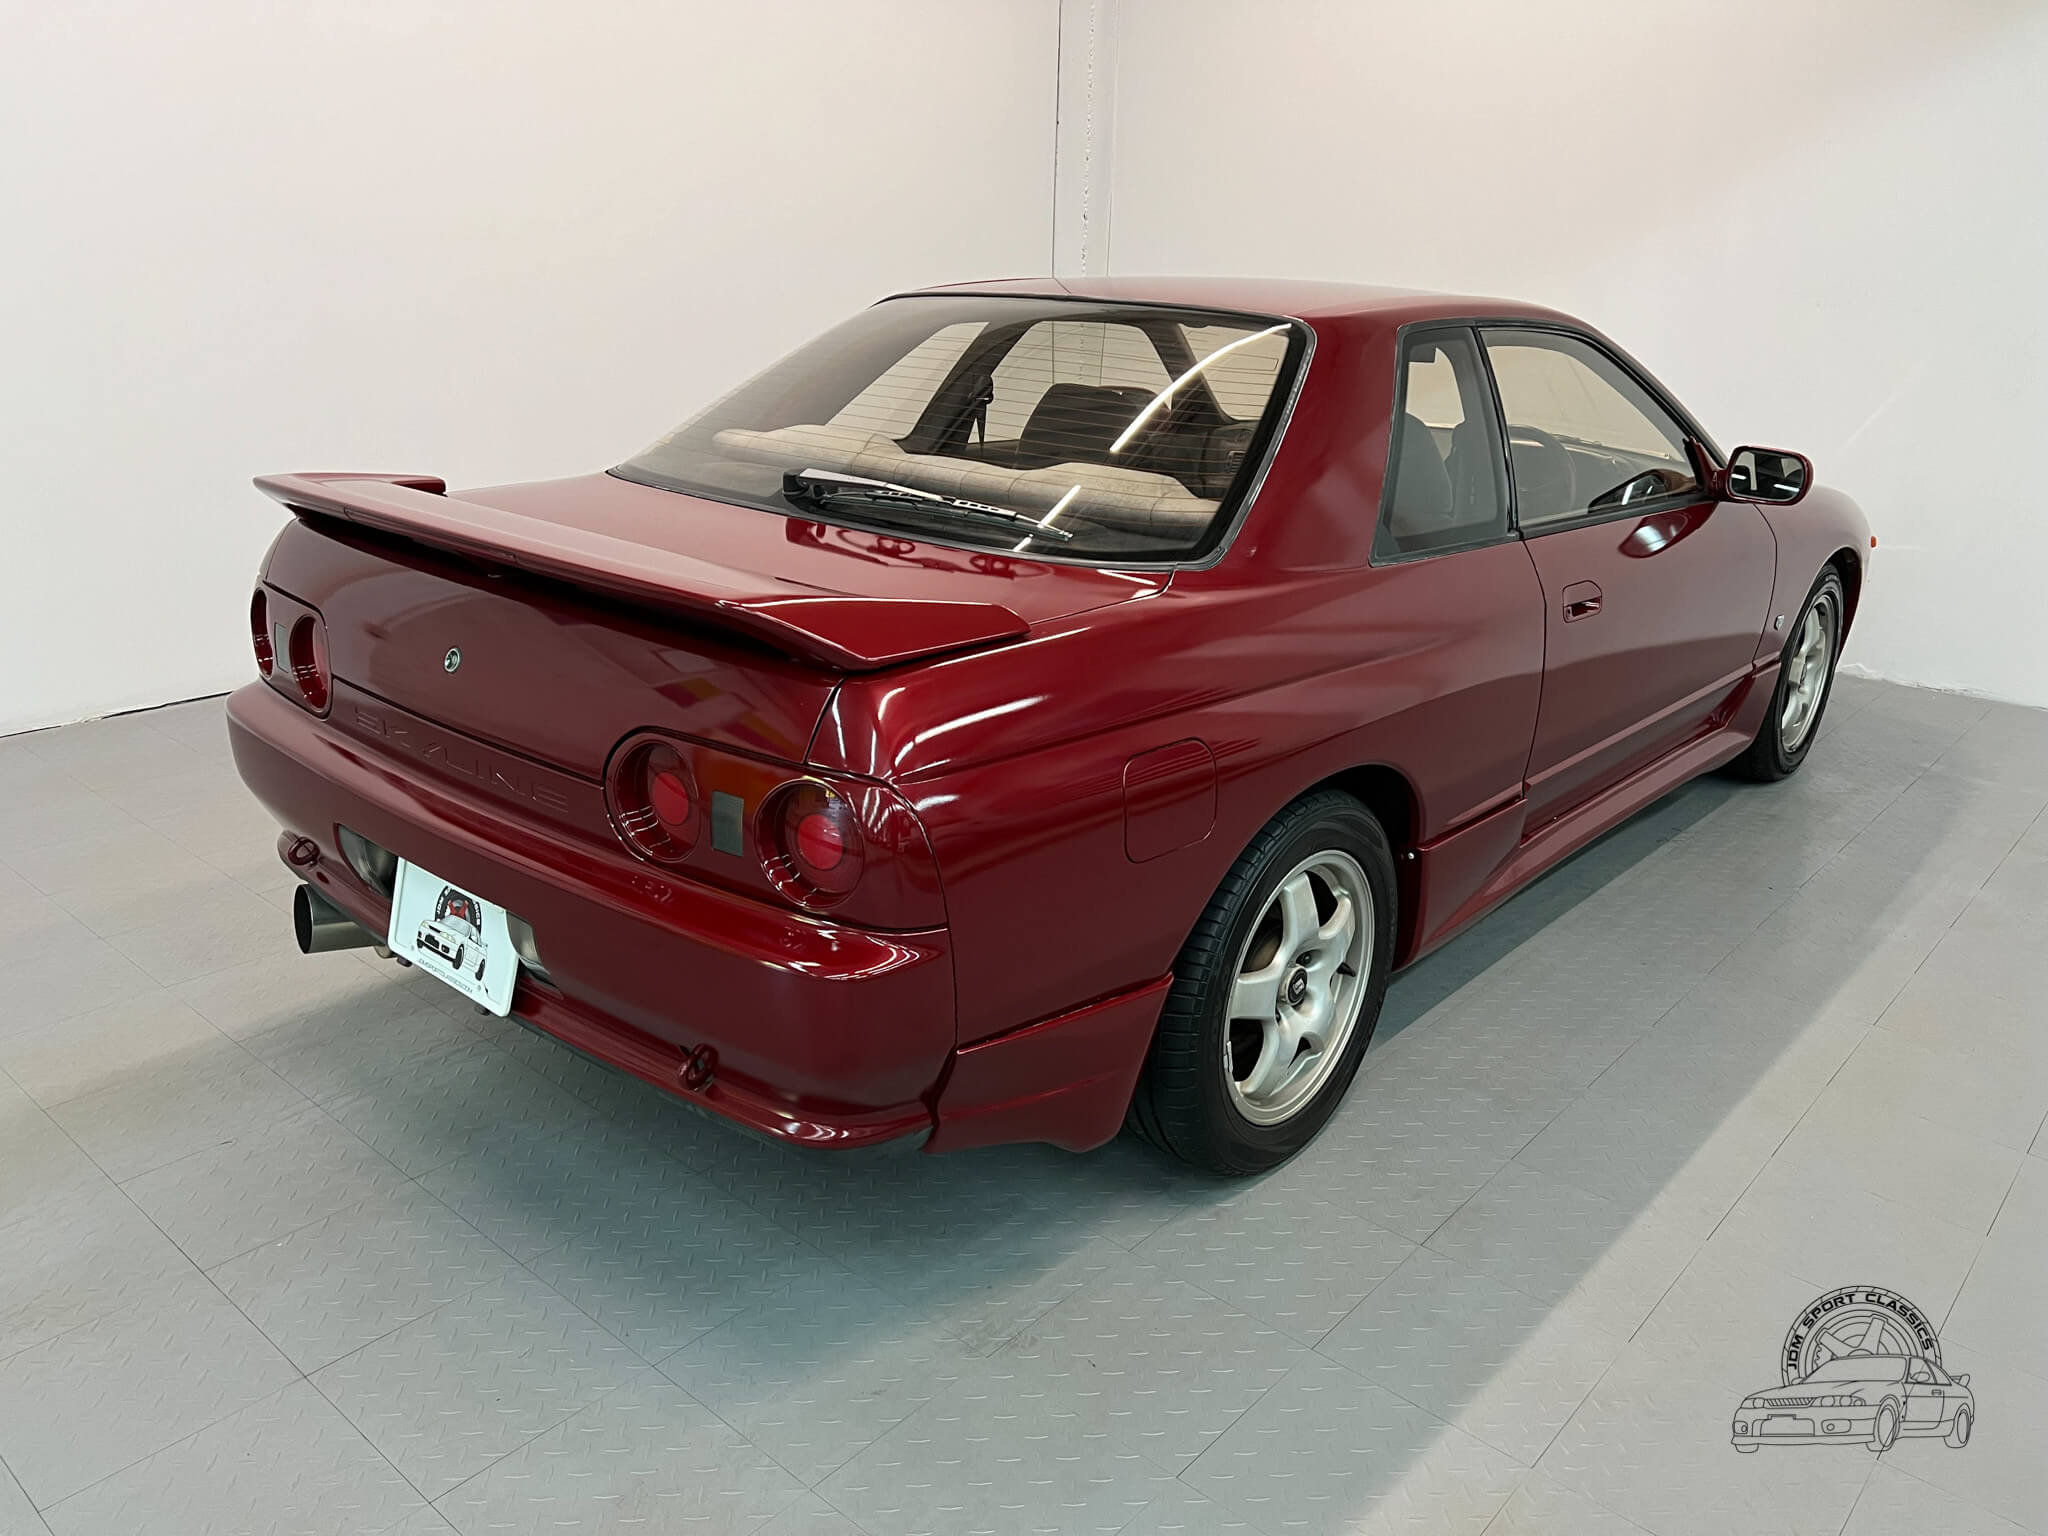 1989 Nissan Skyline GTS-t Type M - JDM Sport Classics